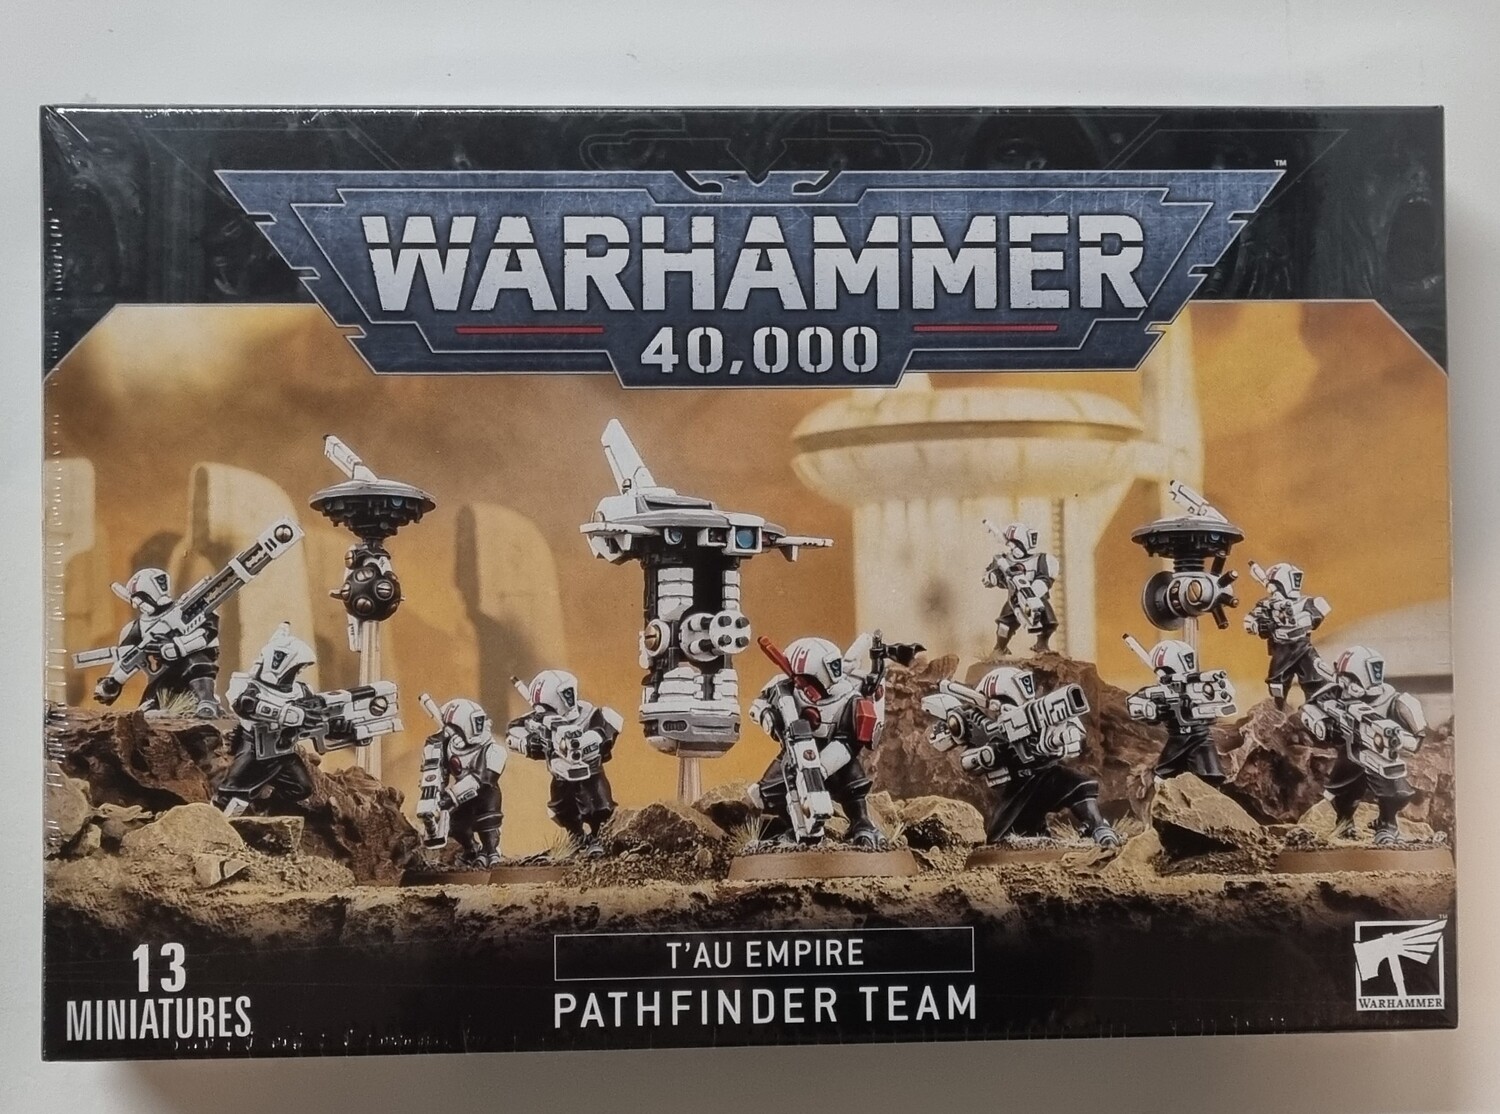 Warhammer 40k, Tau Empire: Pathfinder Team